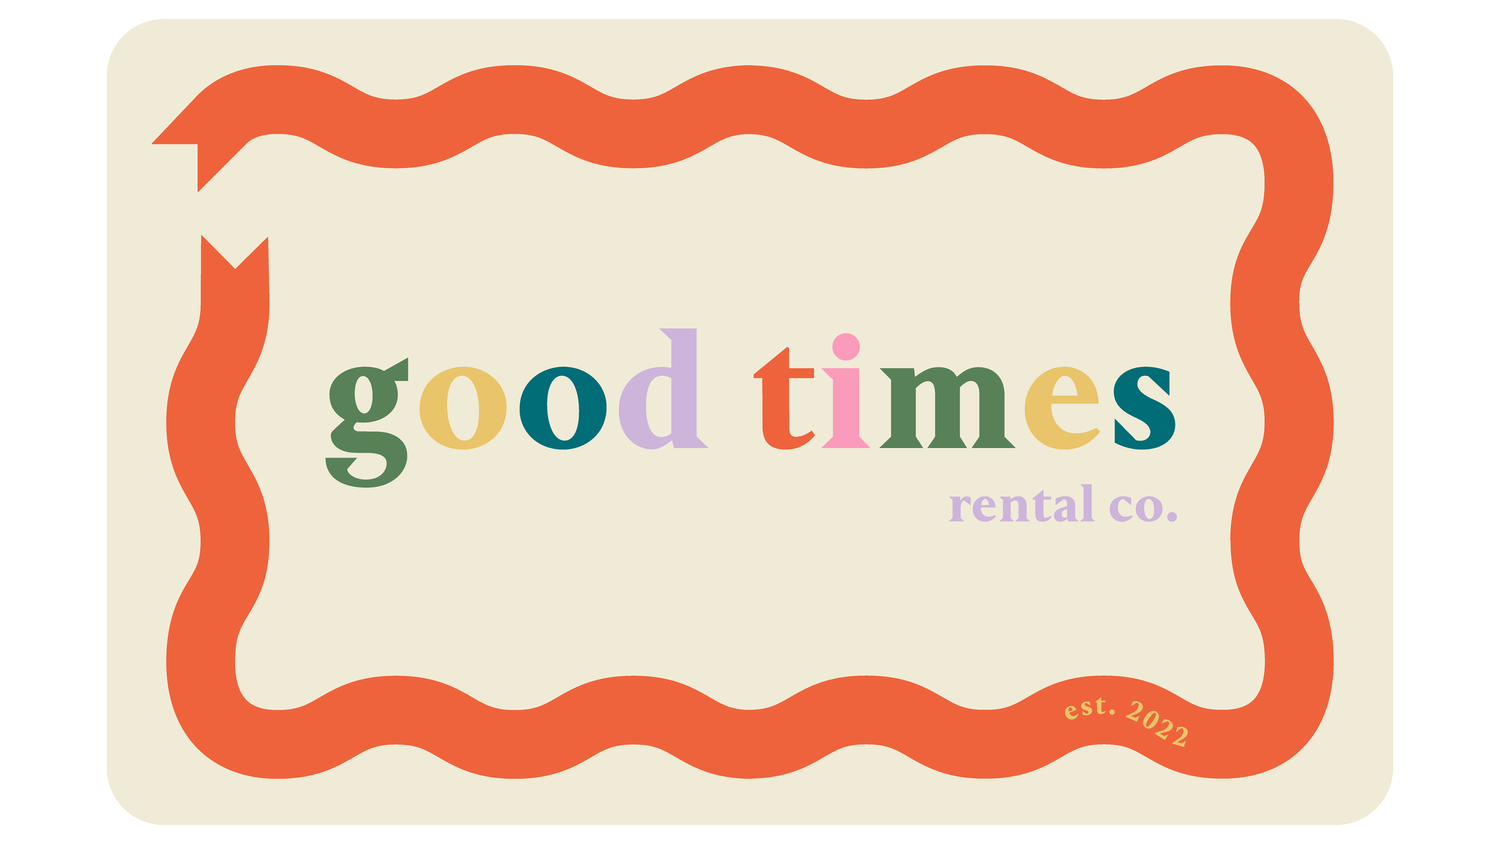 Good Times Rental Co.